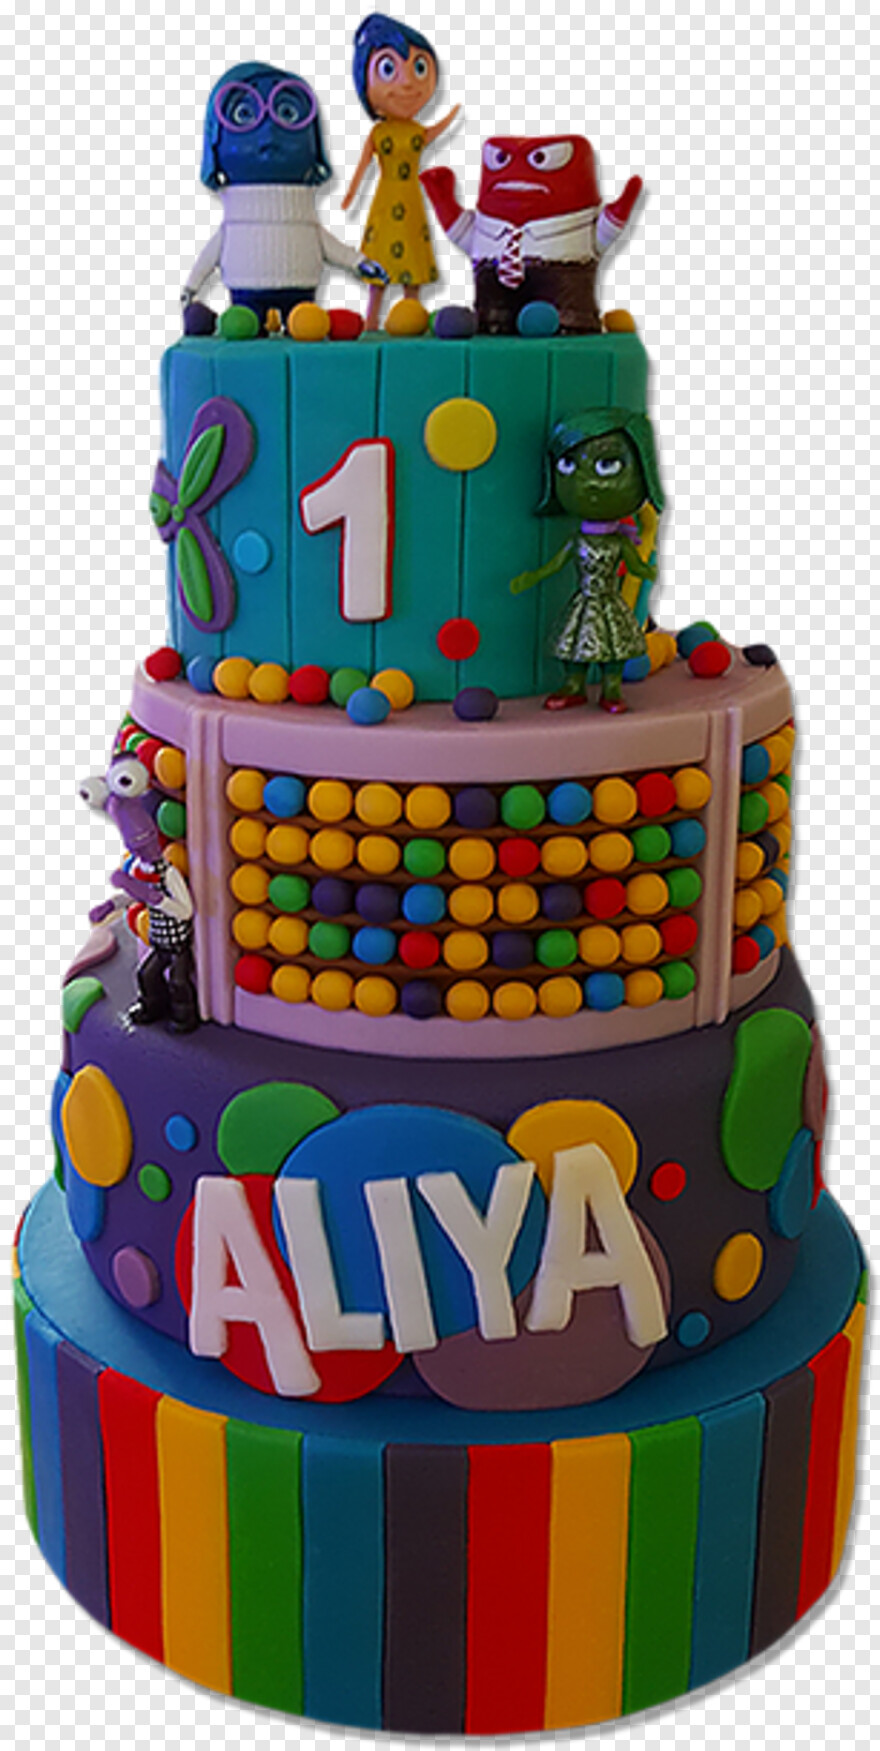 happy-birthday-cake-images # 358057